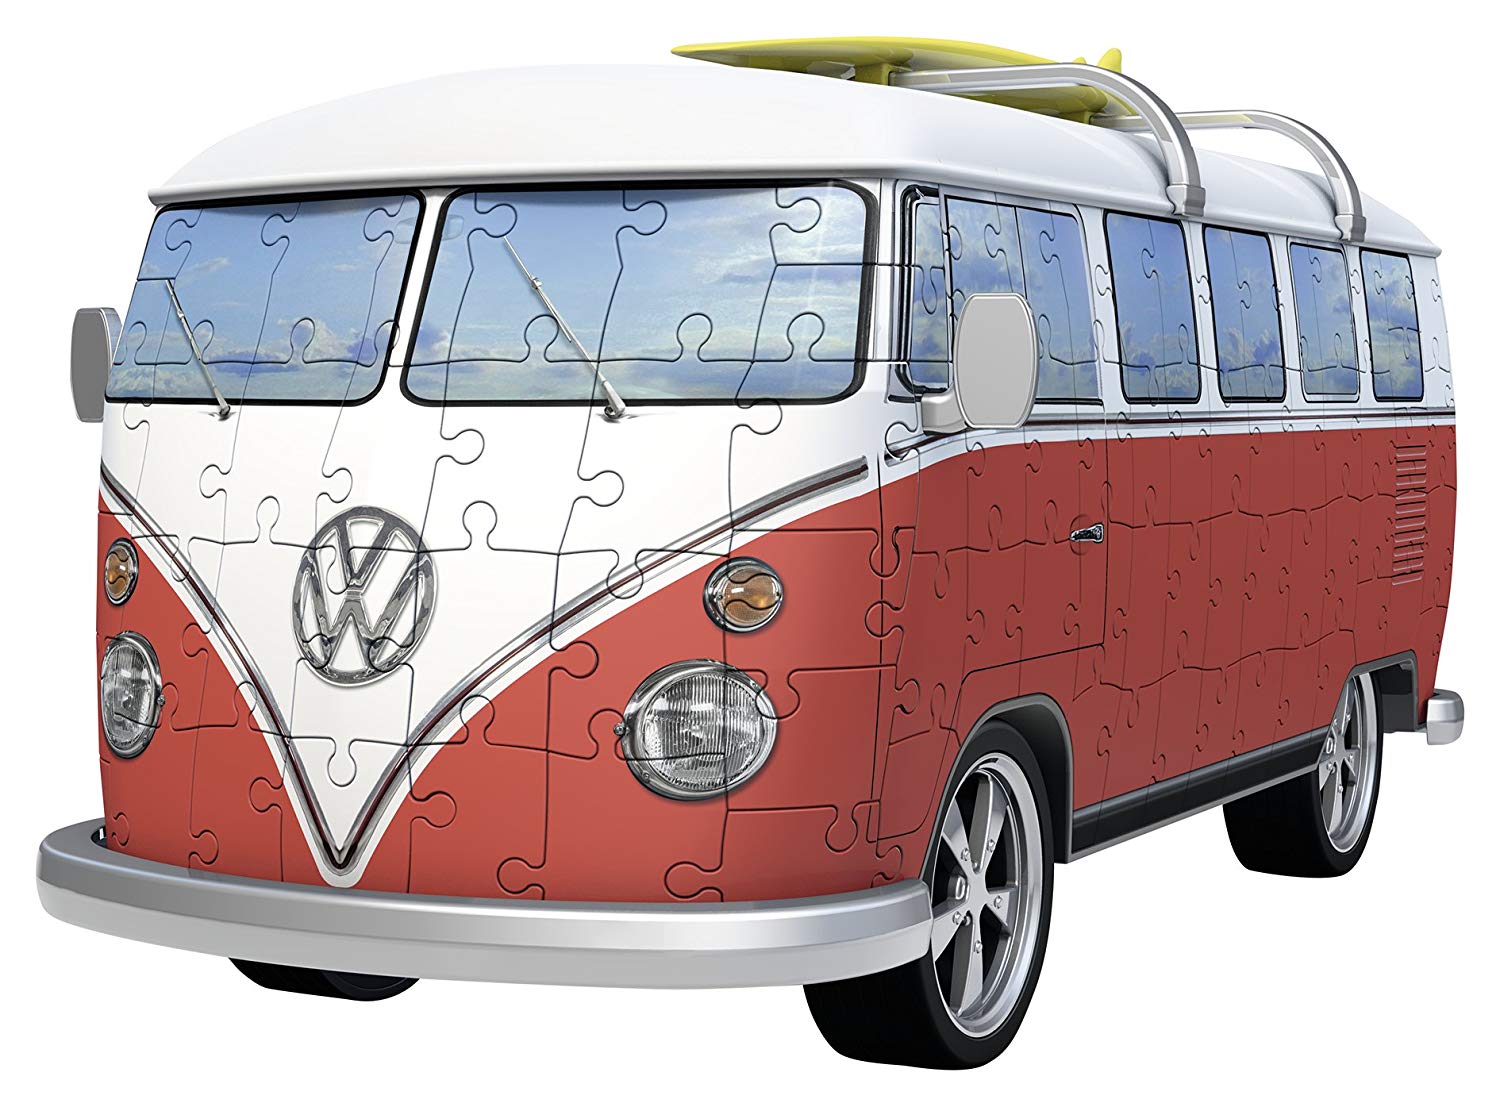 Puzle 3D de Volkswagen T1 Campera Reacondicionado solo 0,6€